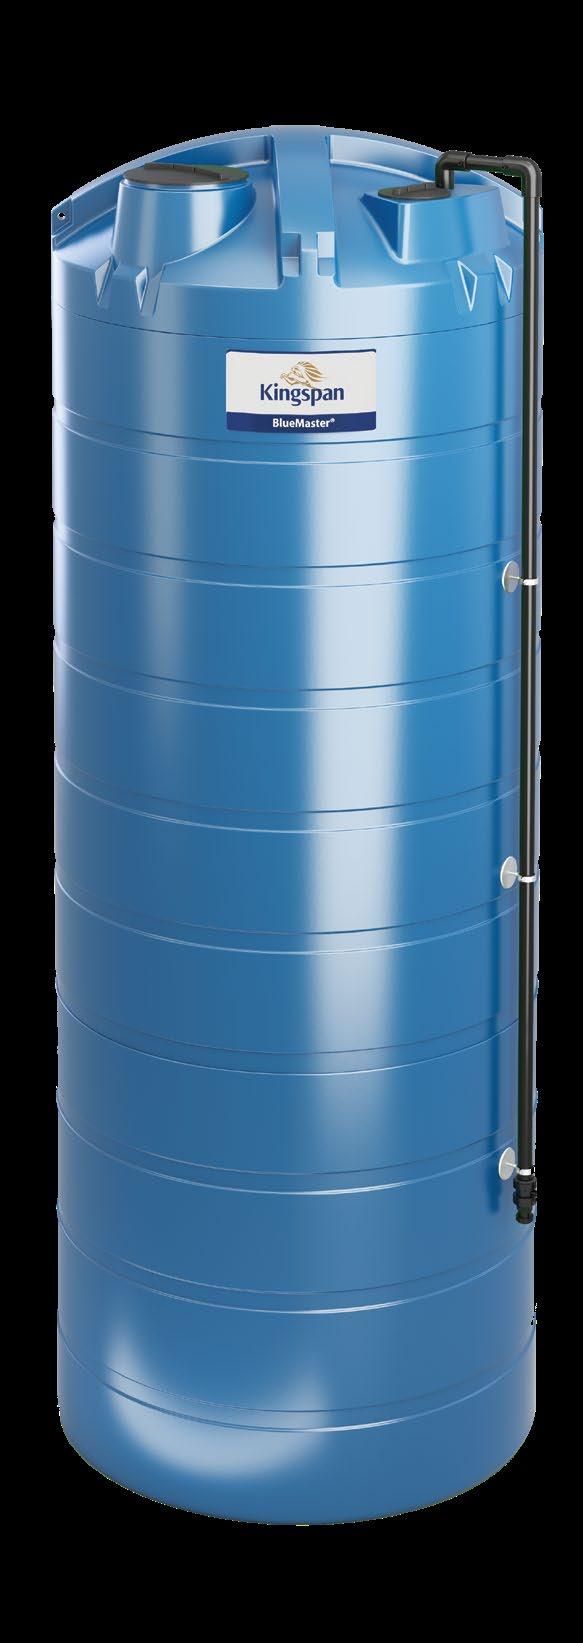 Duża pojemność Łatwy transport Gwarancja 10 LAT Grupa produktów i BlueMaster Storage przeznaczone są do przechowywania i dystrybucji AdBlue, stanowiąc idealne rozwiązanie dla przedsiębiorstw na całym